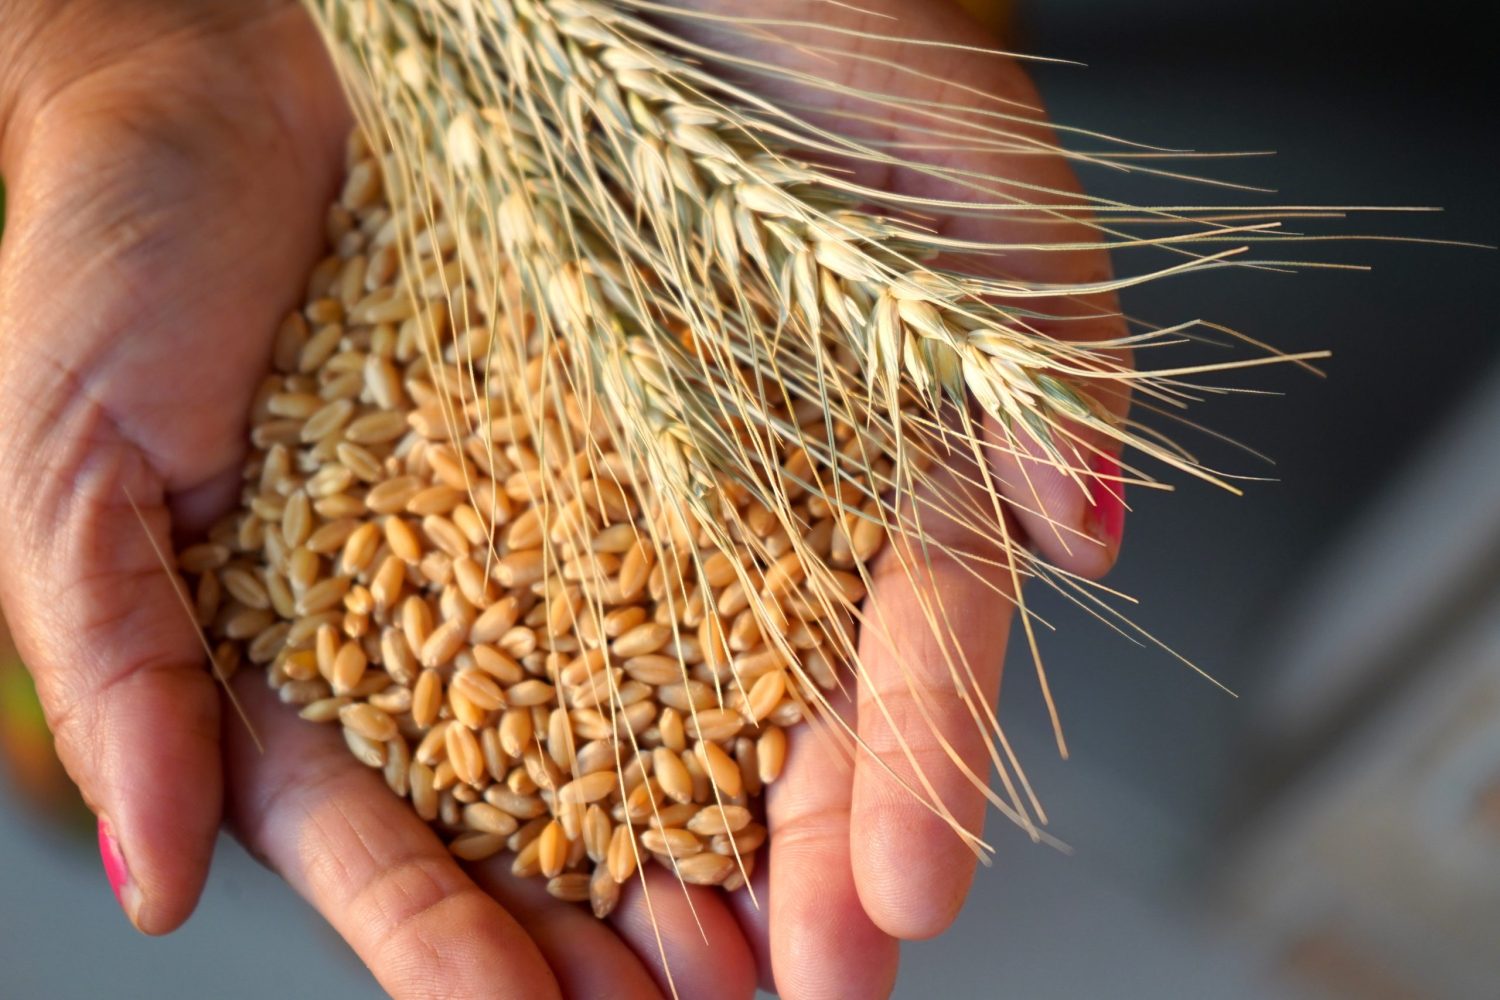 ¿El trigo está afectando tu salud? Descubre los trastornos relacionados. Nanni laboratorios